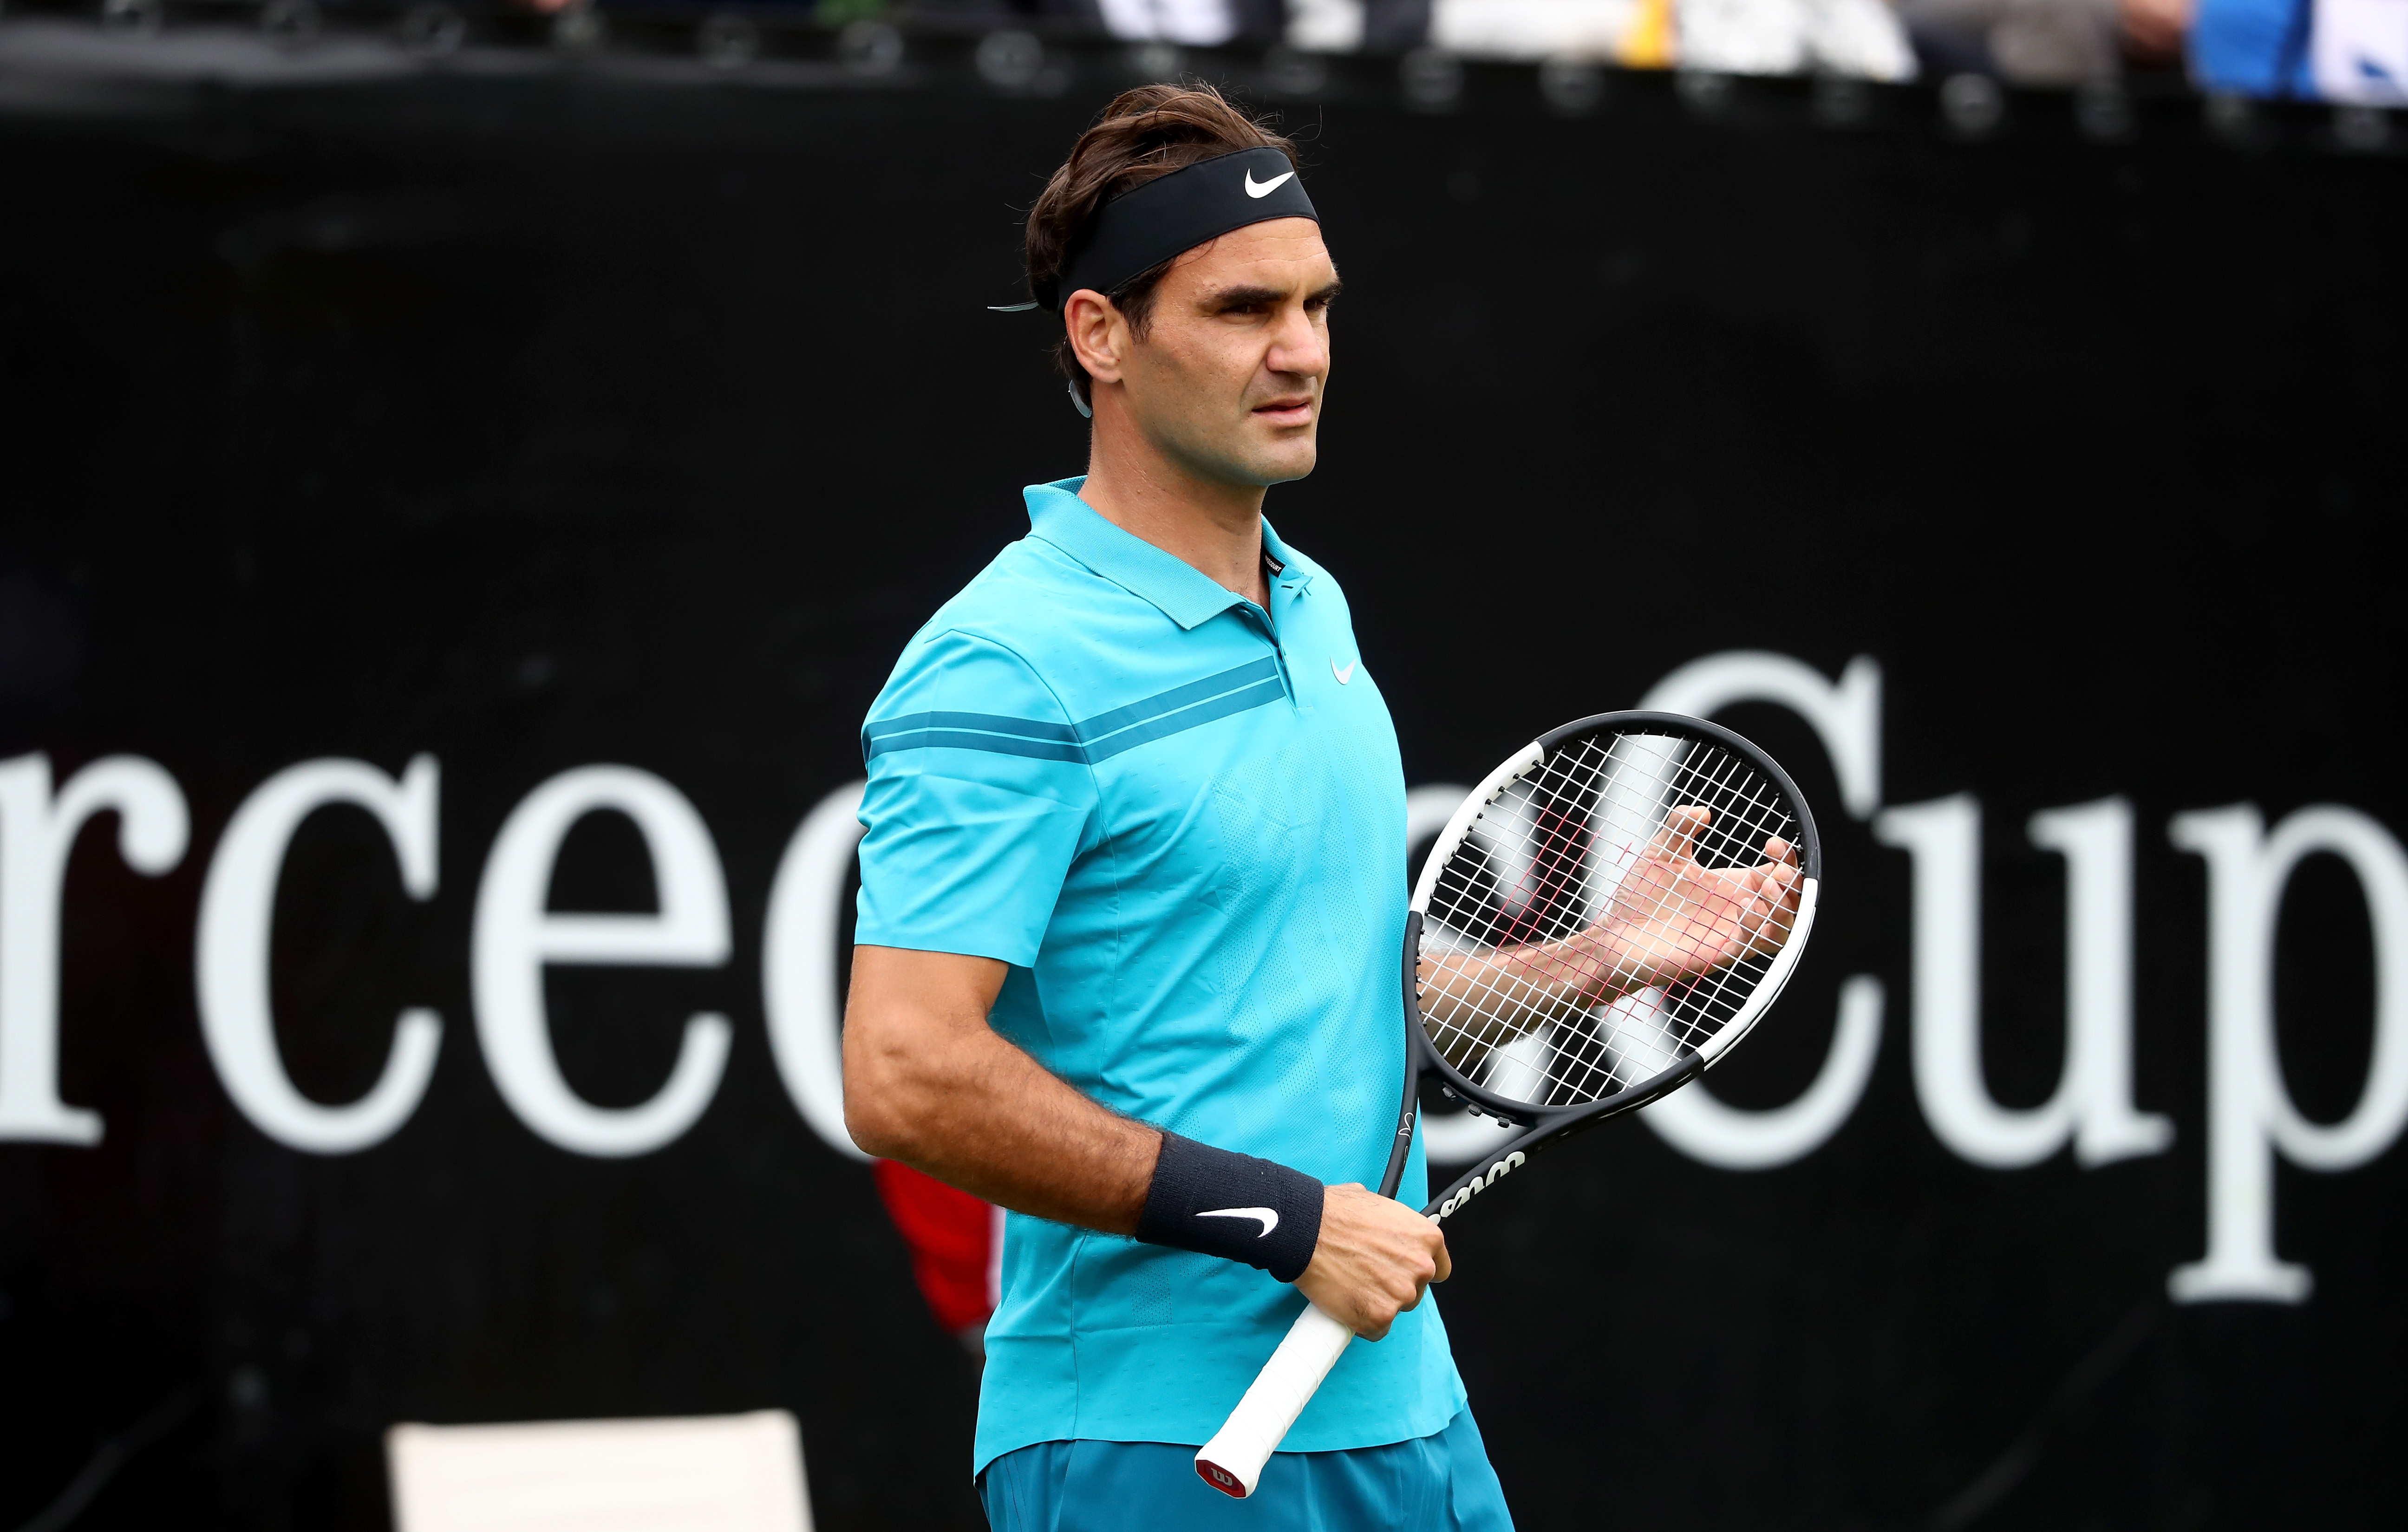 Federer Defeats Pella to Reach Mercedes Cup Semifinals